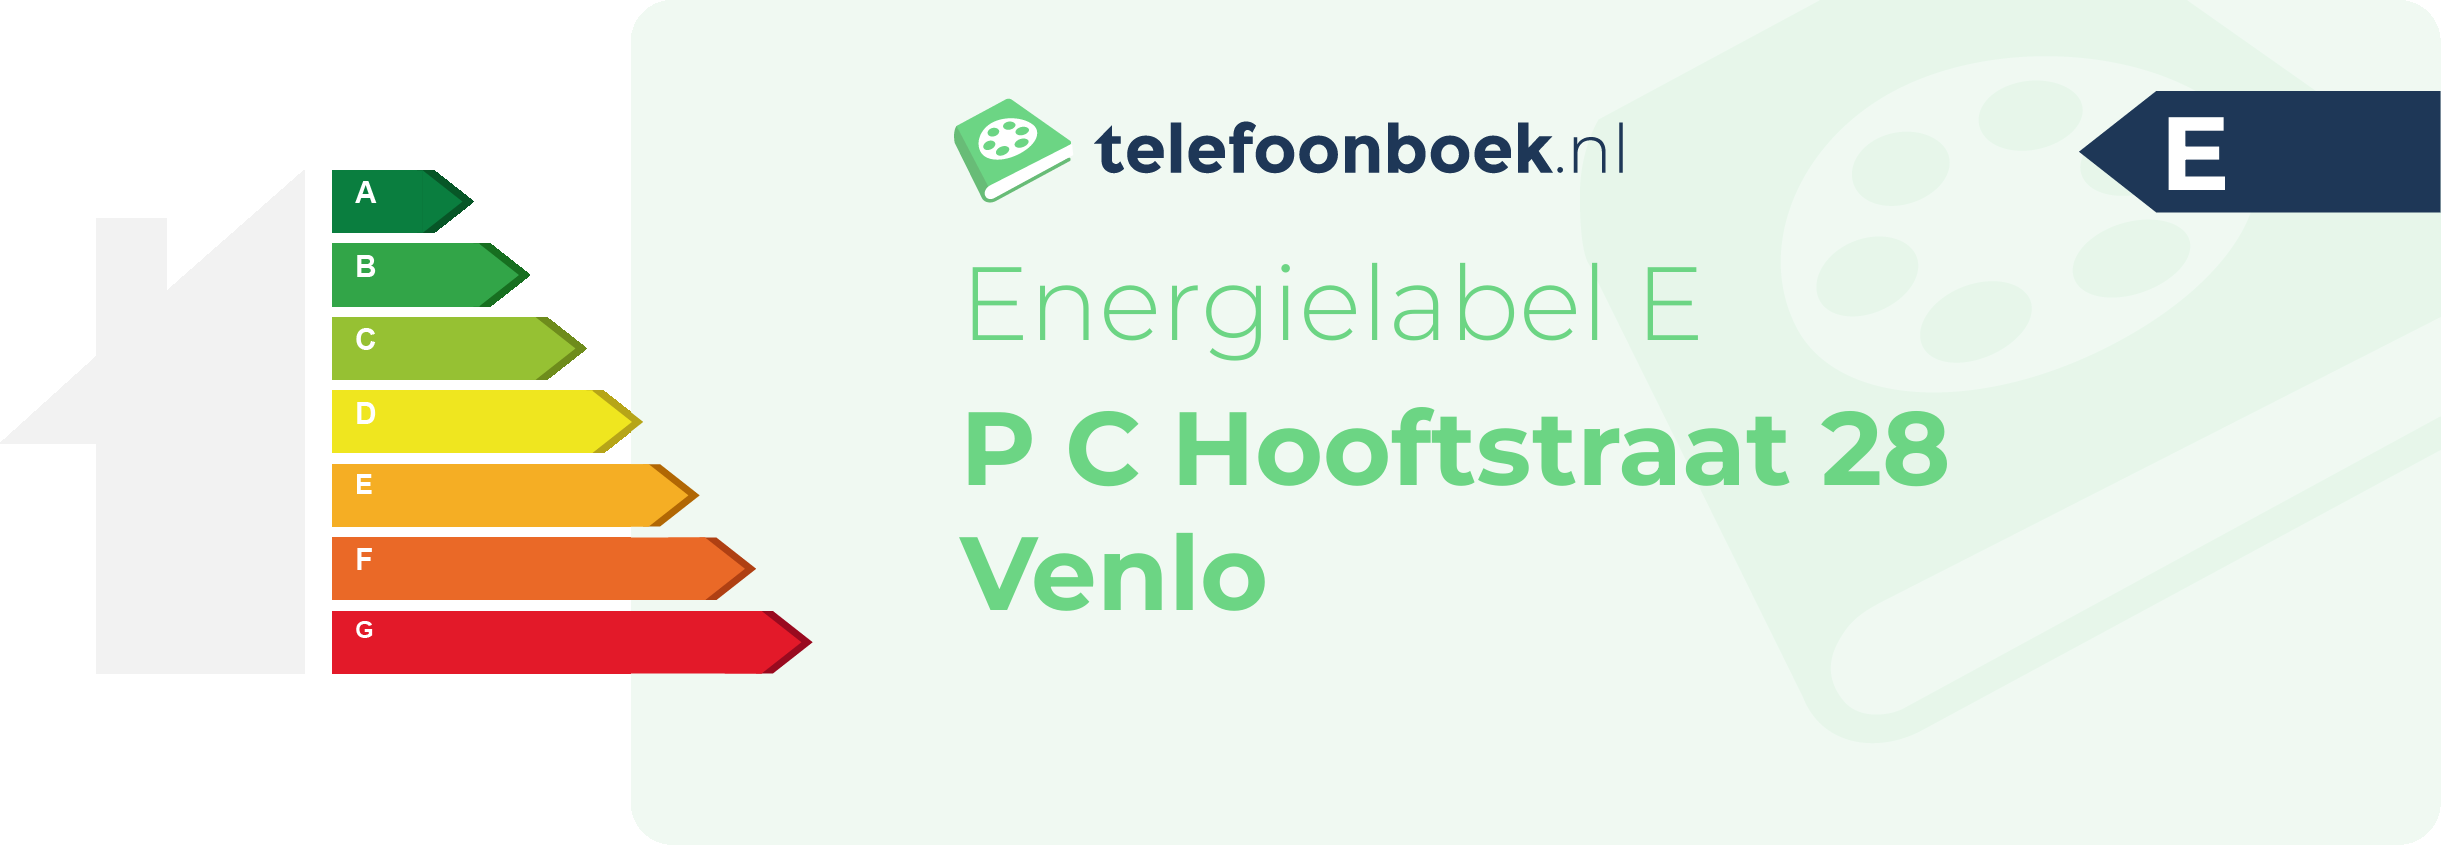 Energielabel P C Hooftstraat 28 Venlo